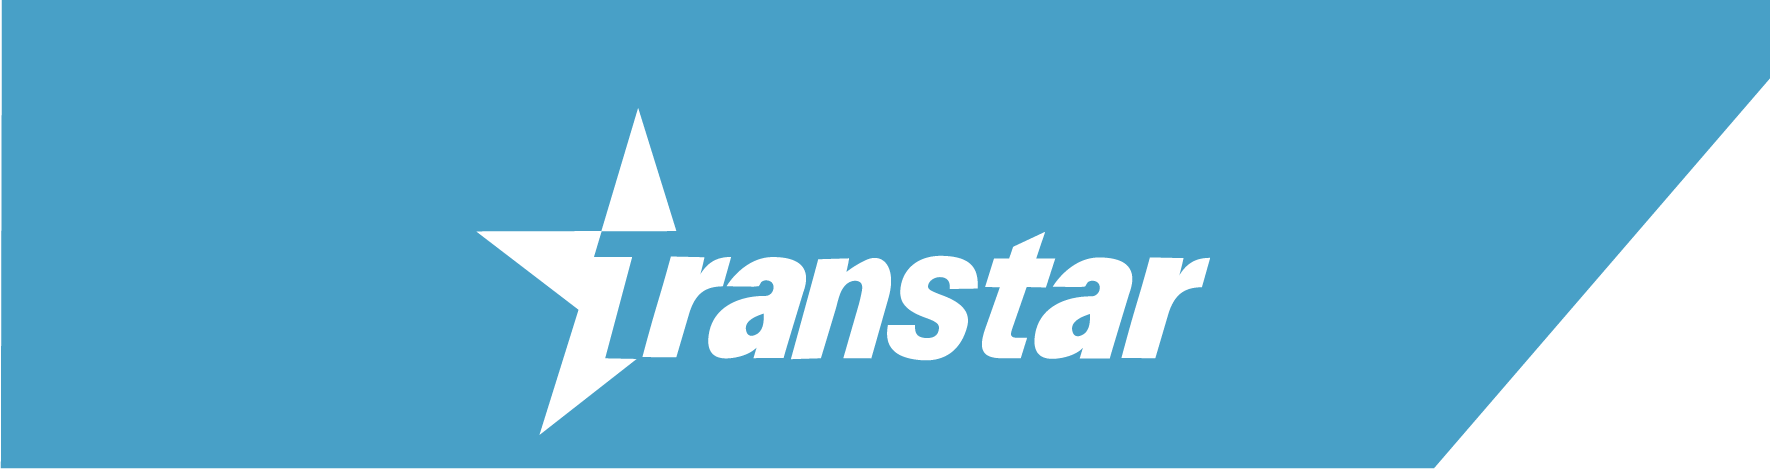 Transstar Header Logo